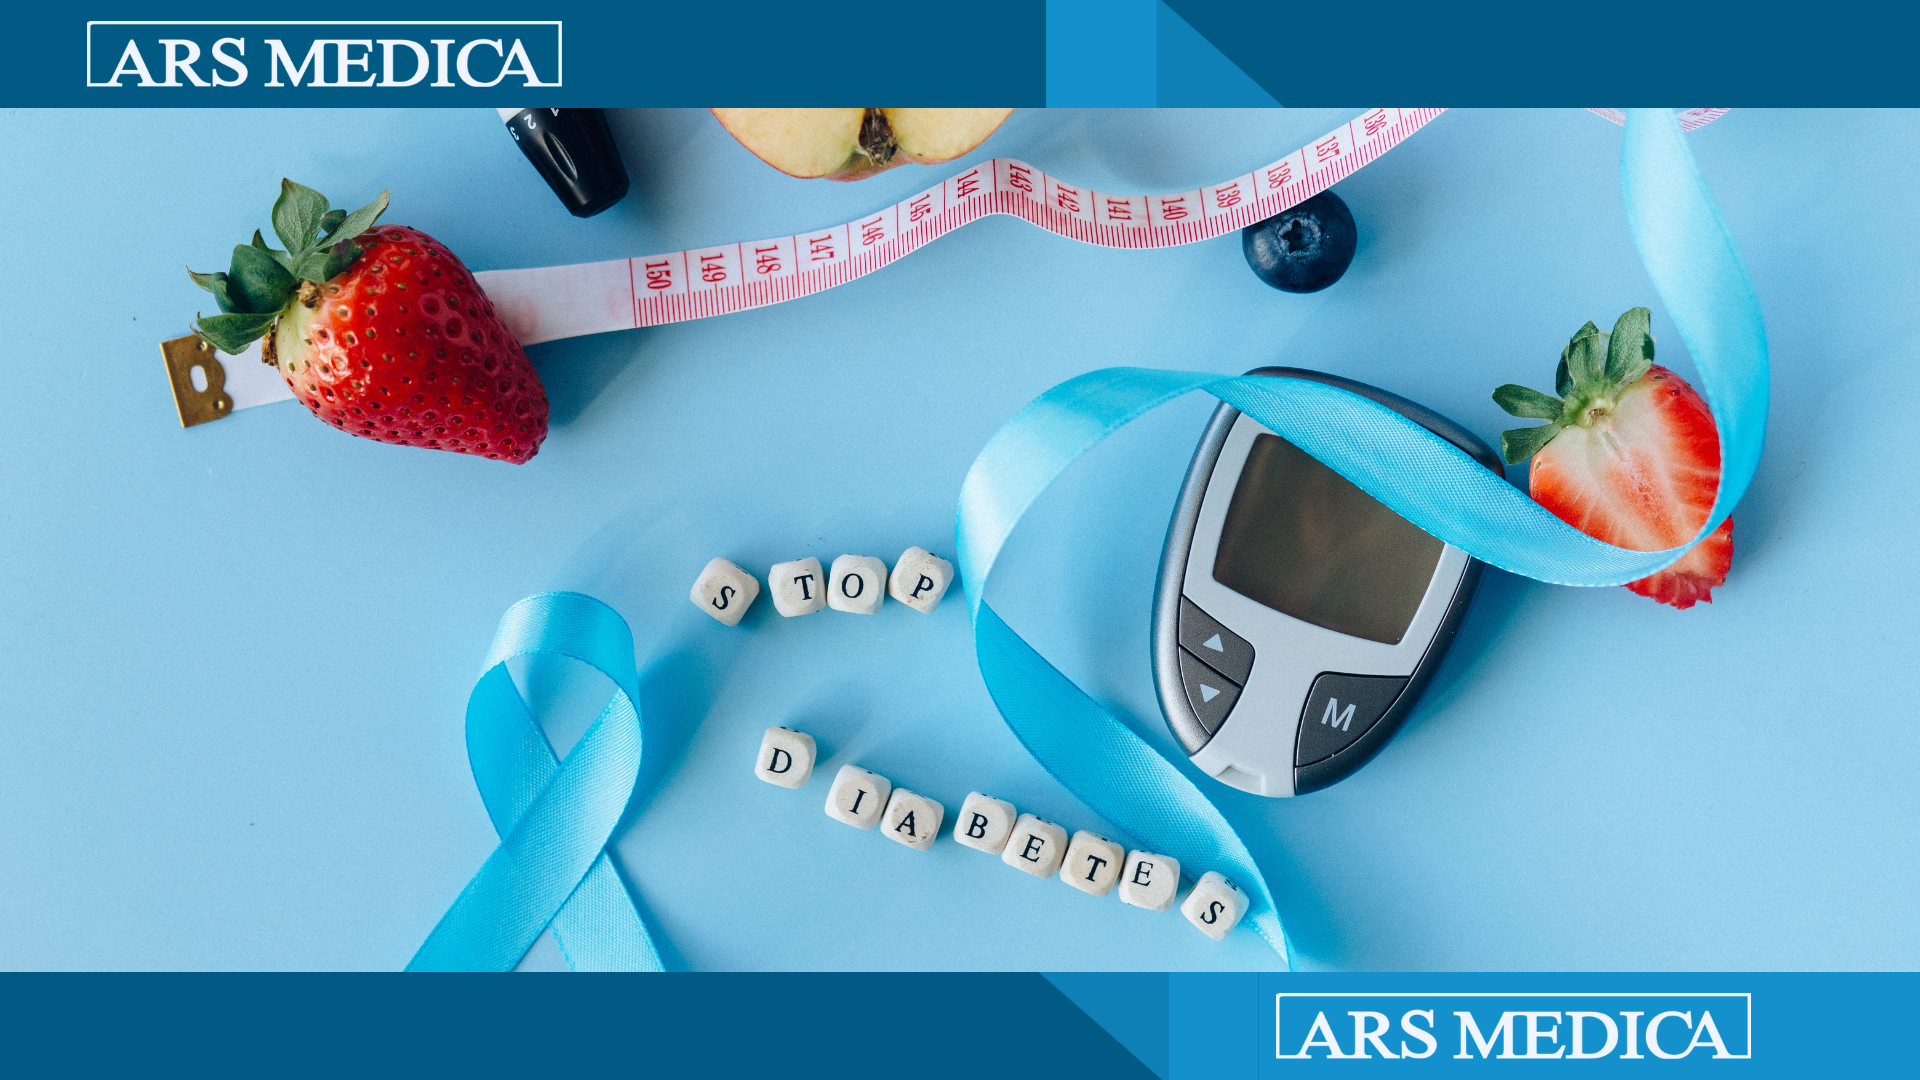 La diagnosi di diabete viene effettuata attraverso un esame del sangue. Il test più comune è il test di glucosio a digiuno. In questo test, viene misurata la quantità nota di glucosio (75gr), somministrati dal laboratorio analisi, nel sangue dopo aver digiunato per almeno 8 ore. Un valore di glucosio a digiuno superiore a 126 mg/dl, per due volte, indica la presenza di diabete.